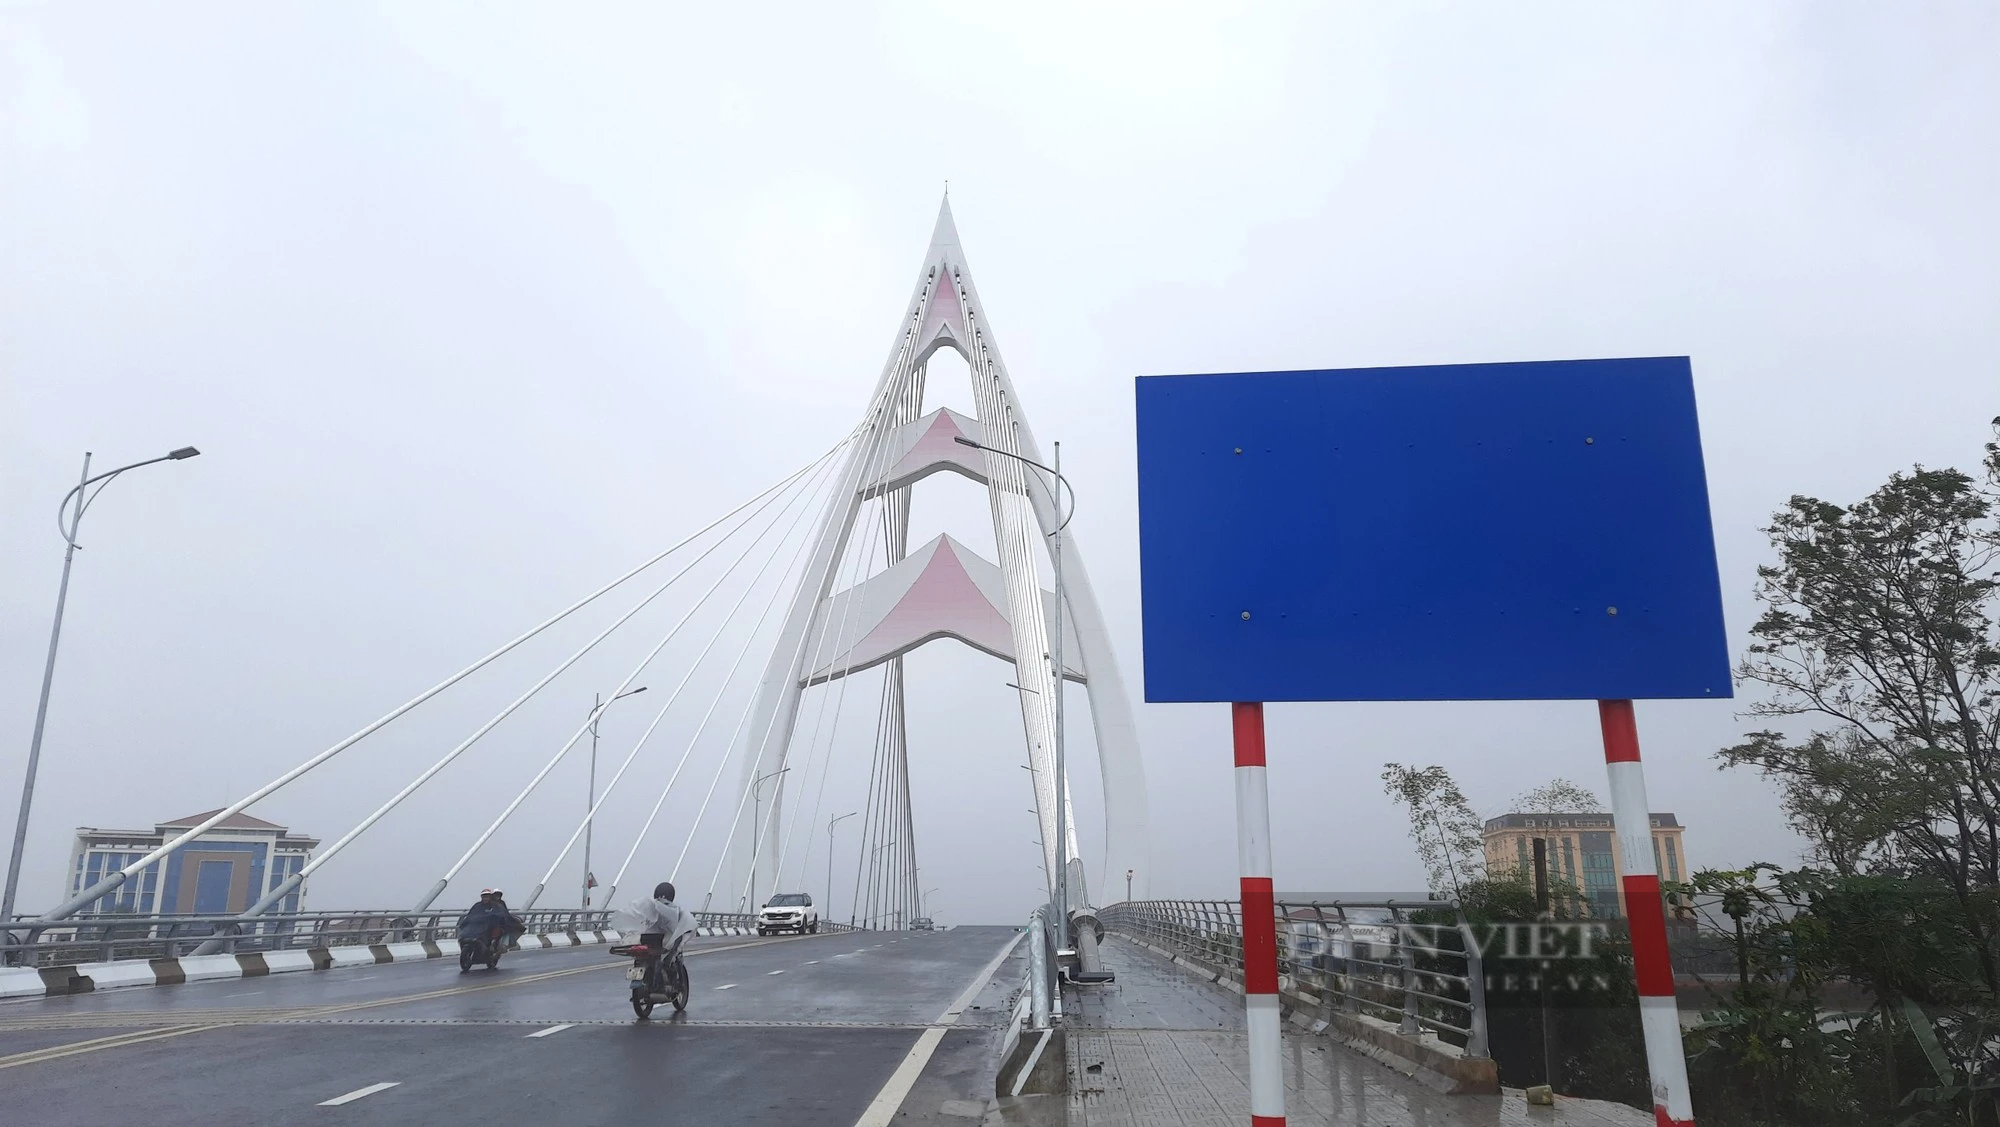 Lấy ý kiến nhân dân để đặt tên cây cầu cao nhất Quảng Trị - Ảnh 1.